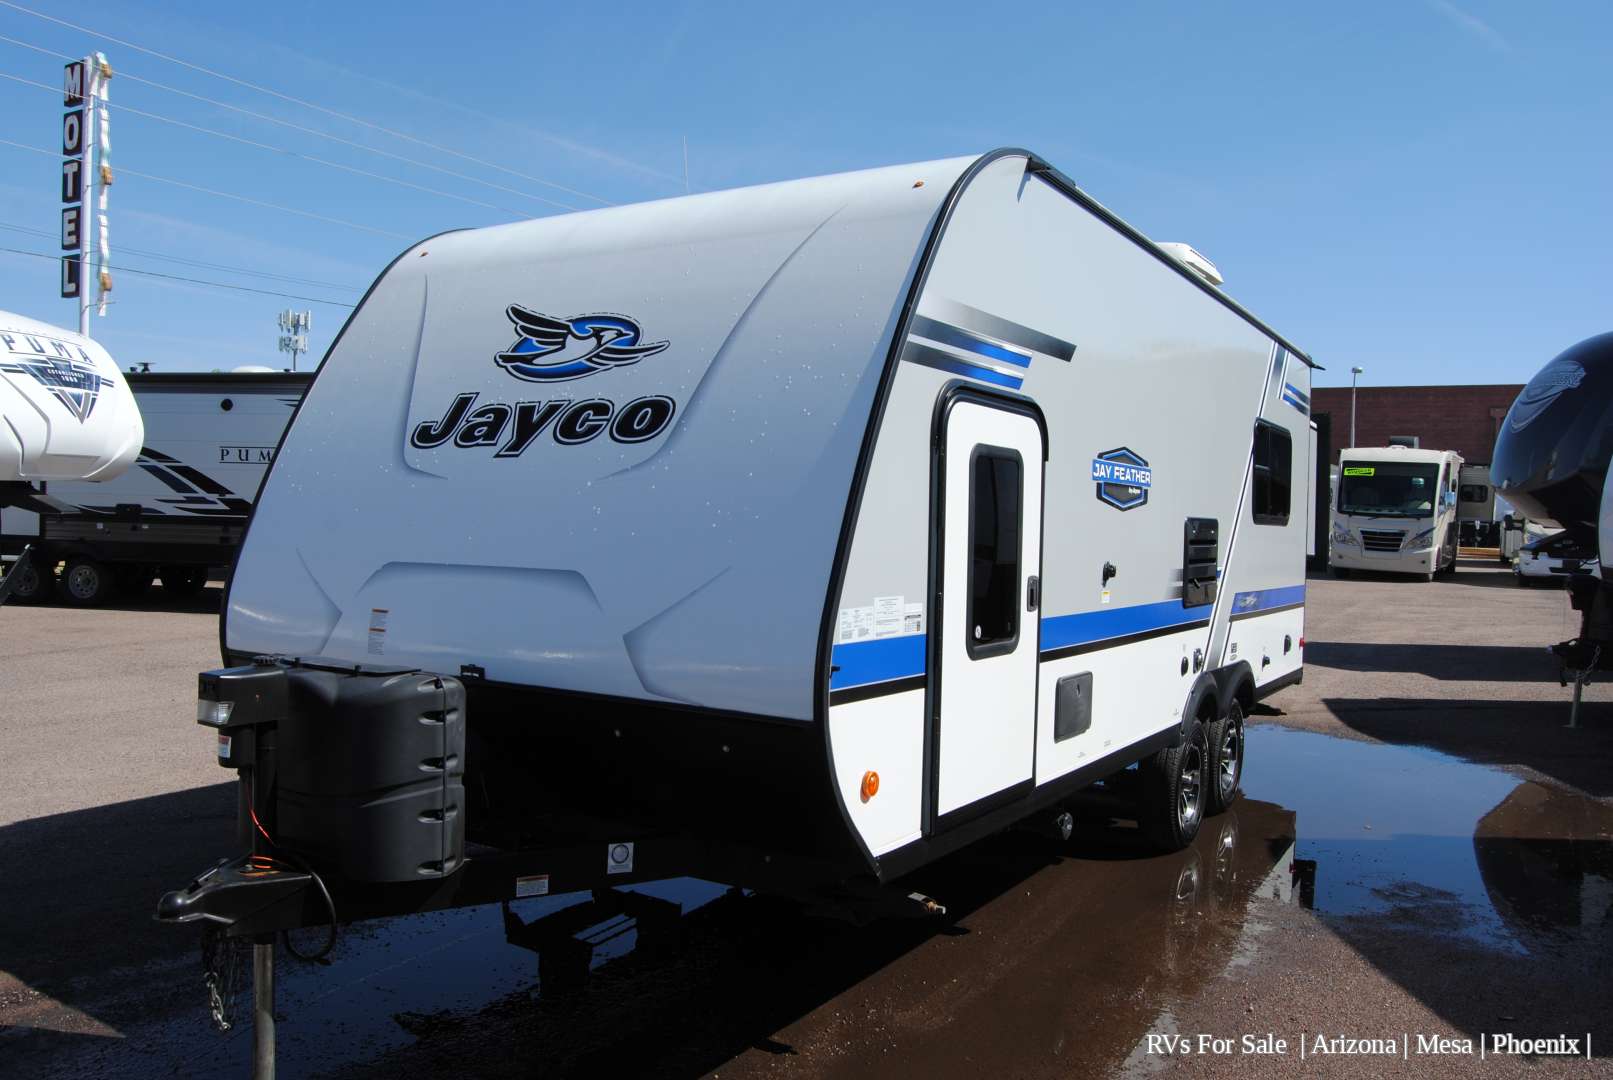 jayco x213 travel trailer